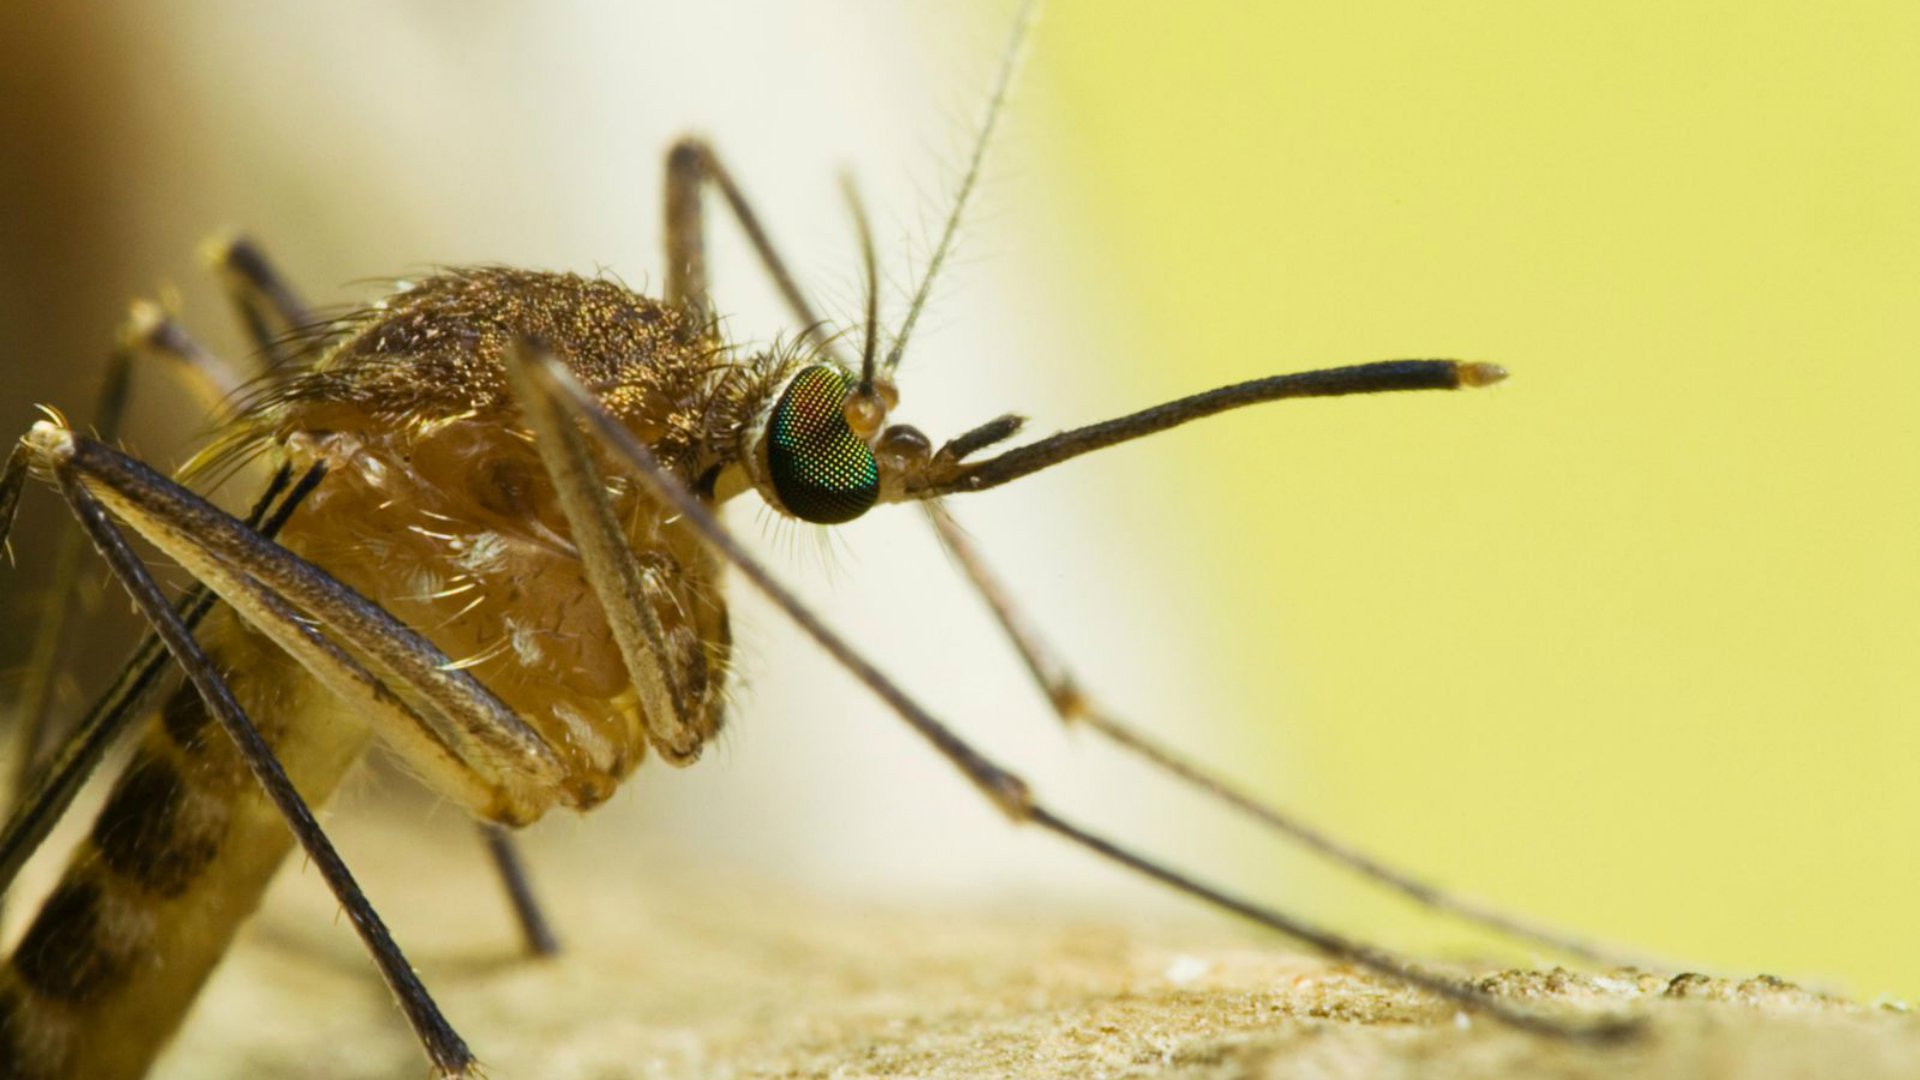 Foto de capa do artigo "Febre amarela no Brasil: surtos causados por dois mosquitos"